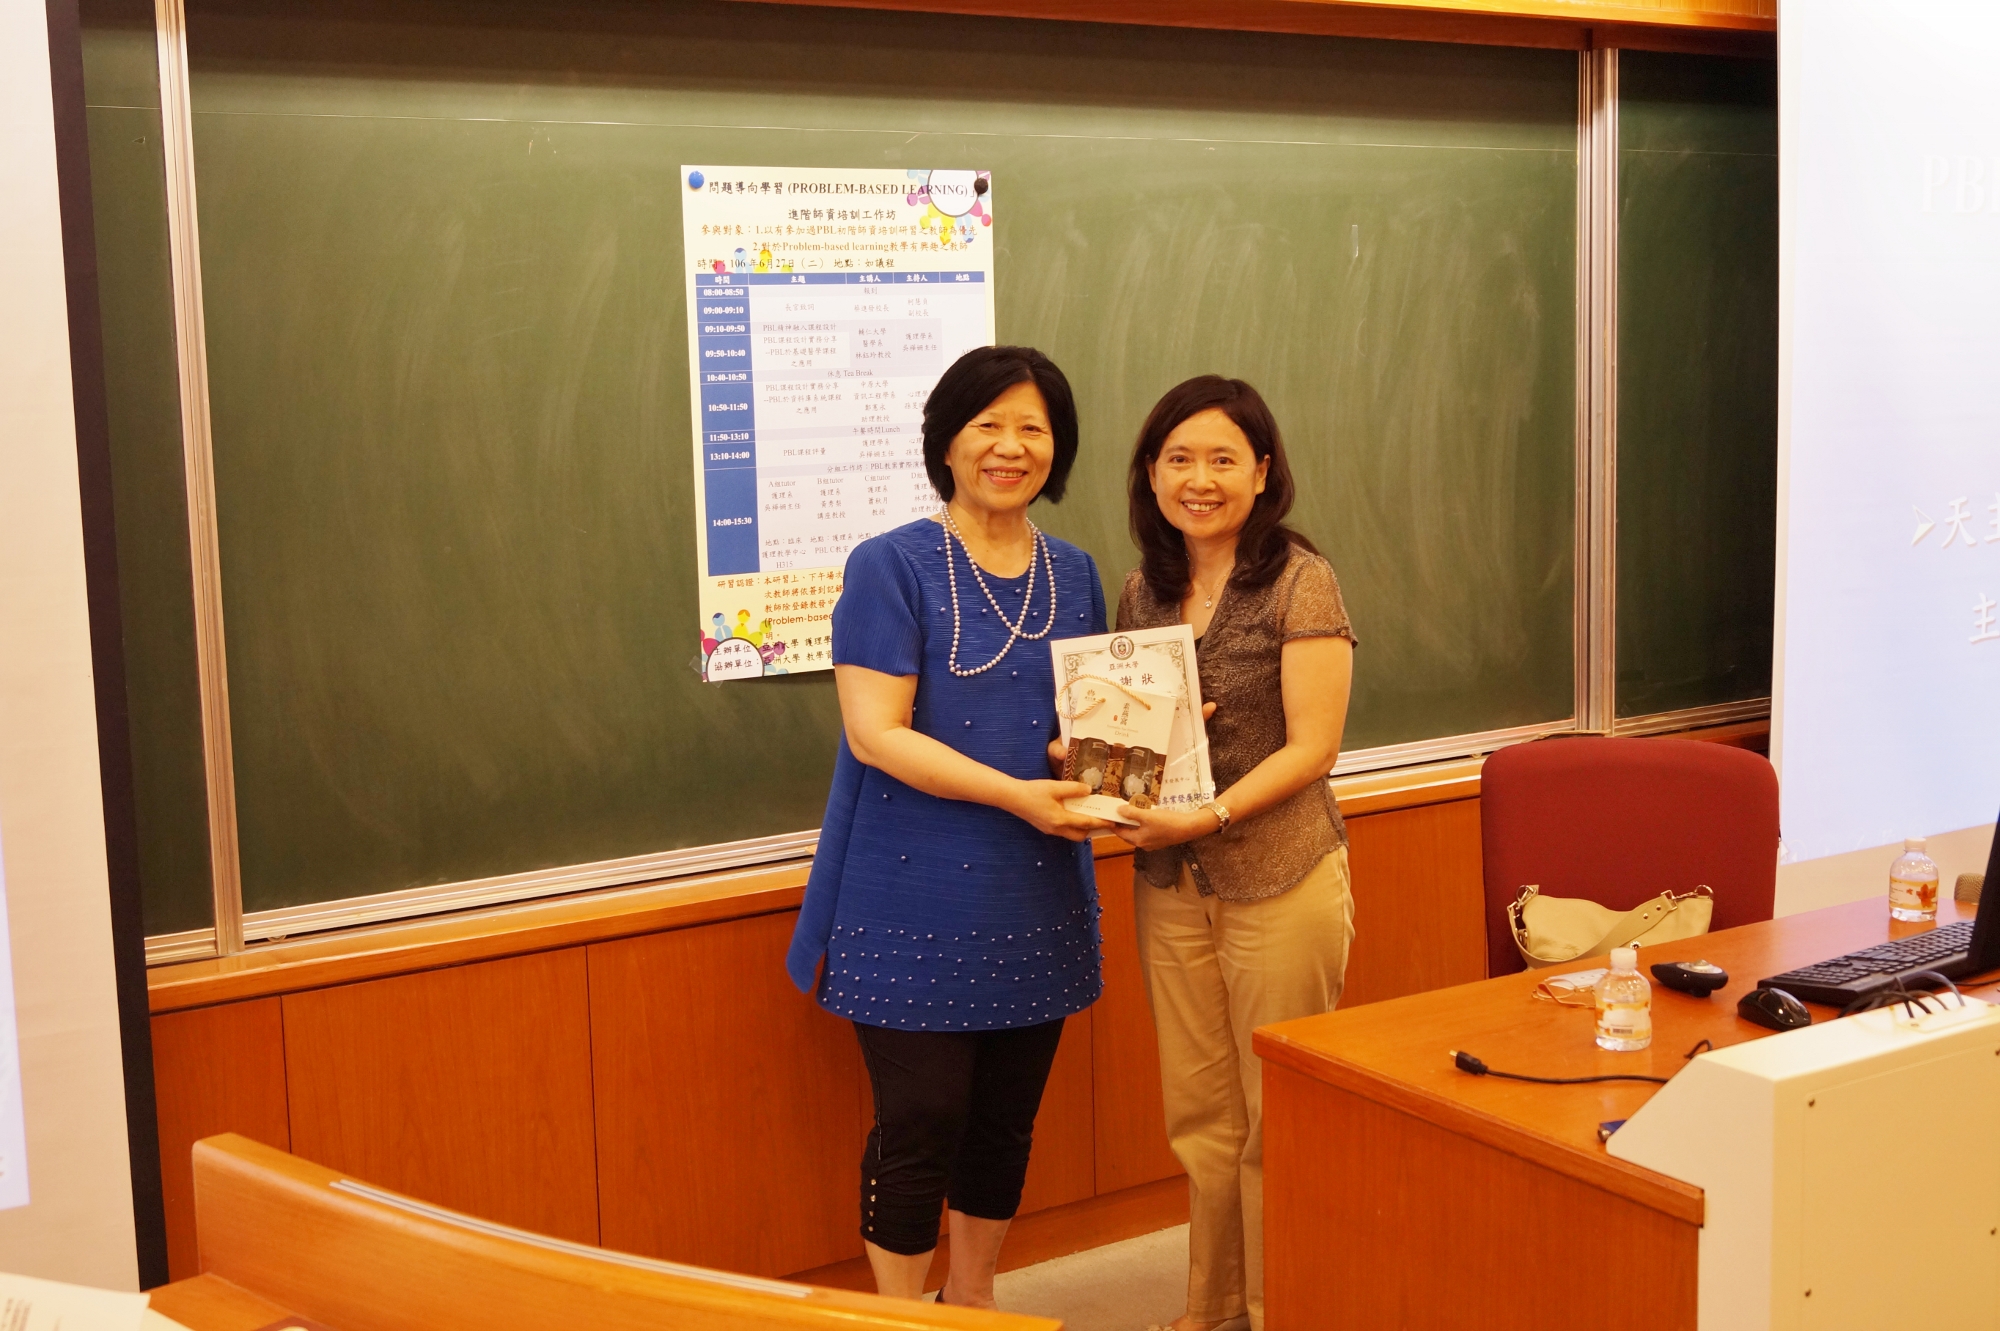 亞大副校長柯慧貞(左)致贈感謝狀及禮品予輔仁大學醫學系林鈺玲教授。